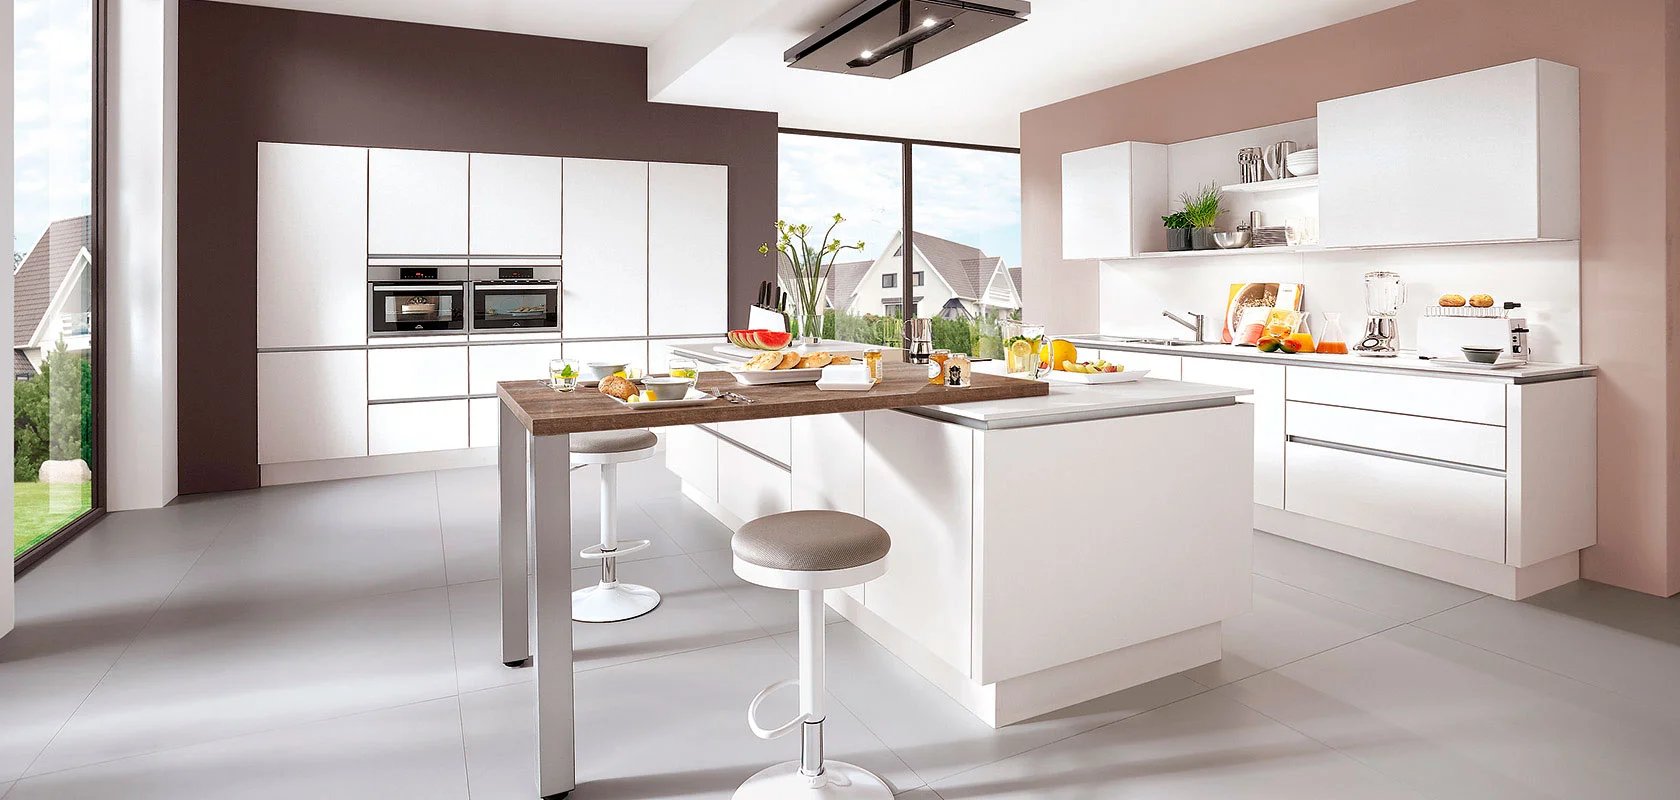 Gran cocina moderna con armarios espaciosos y paredes en tonos marrones y beige, destacando una isla central que combina funciones de encimera y mesa, acompañada de dos sillas.